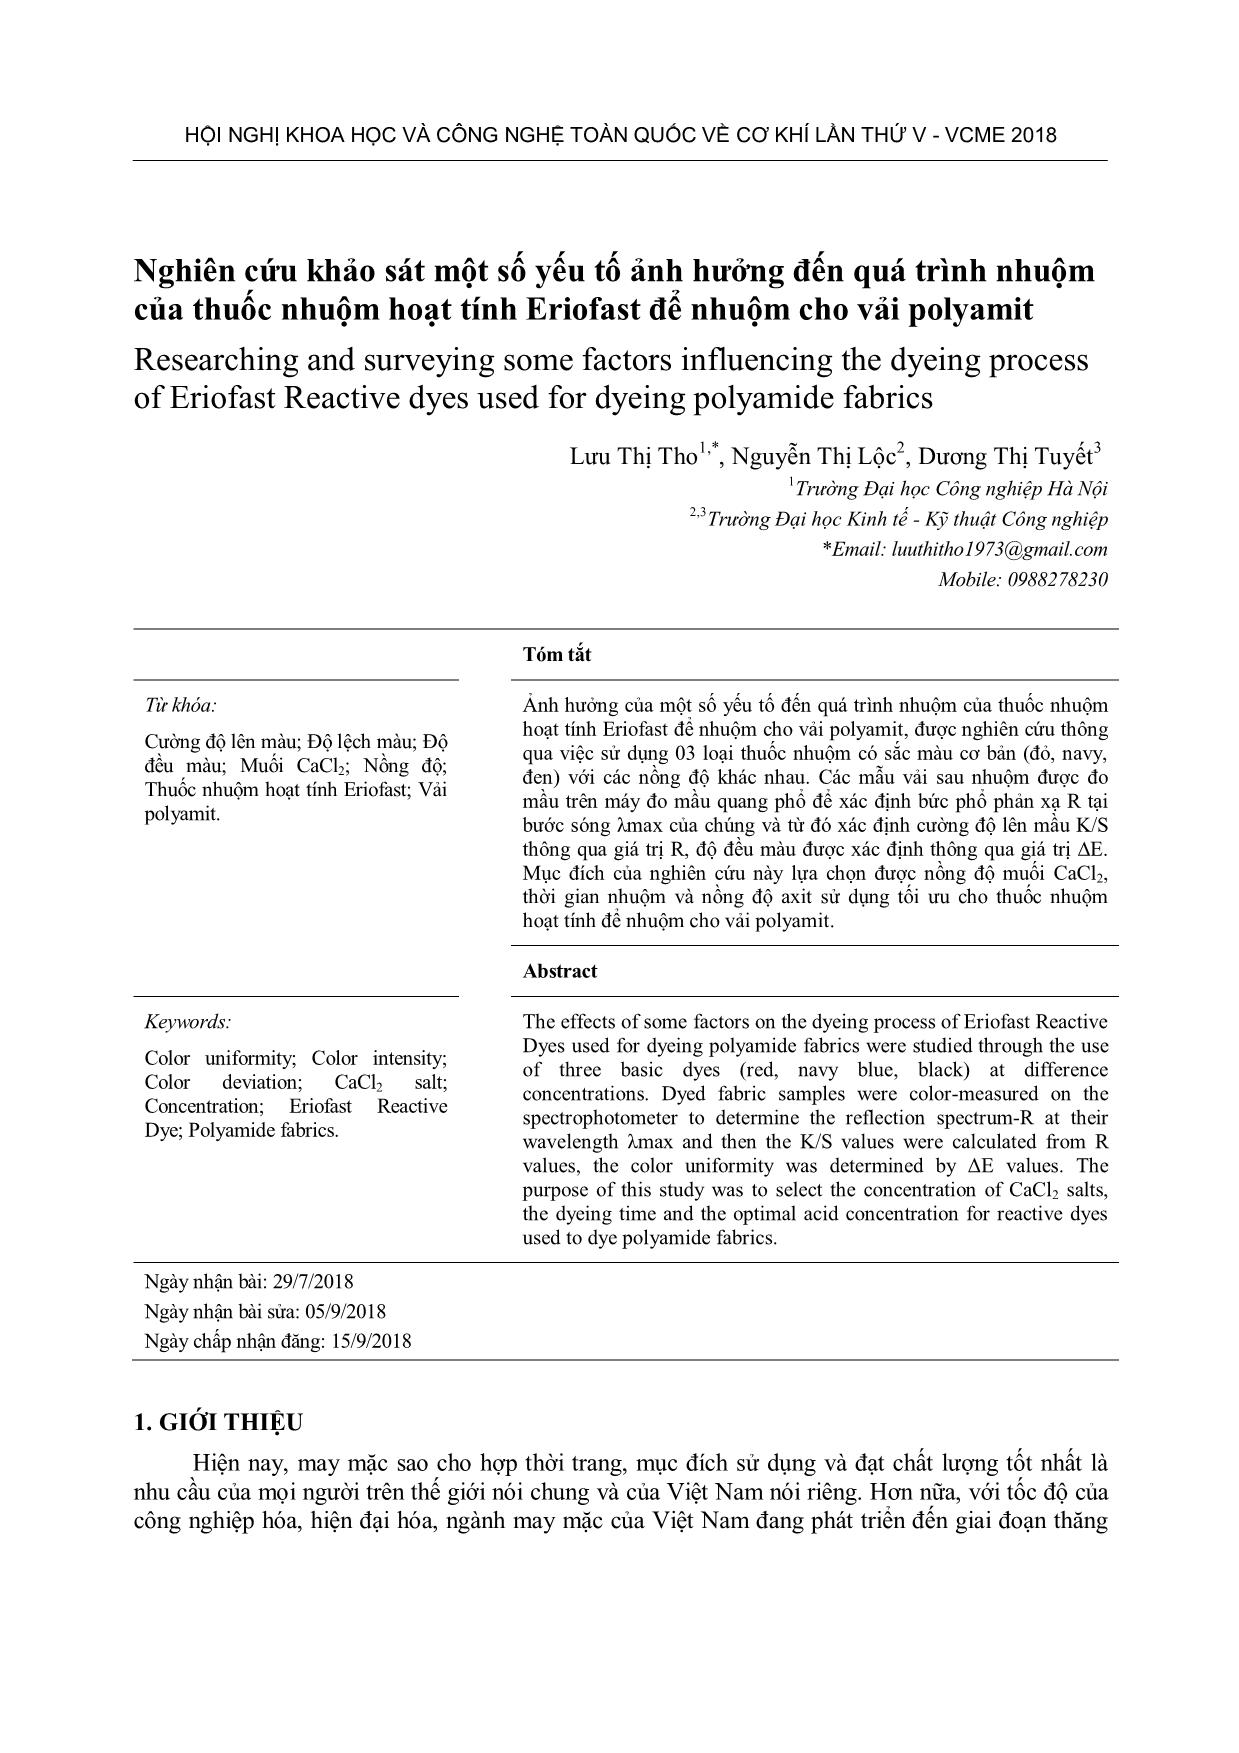 Nghiên cứu khảo sát một số yếu tố ảnh hưởng đến quá trình nhuộm của thuốc nhuộm hoạt tính Eriofast để nhuộm cho vải polyamit trang 1